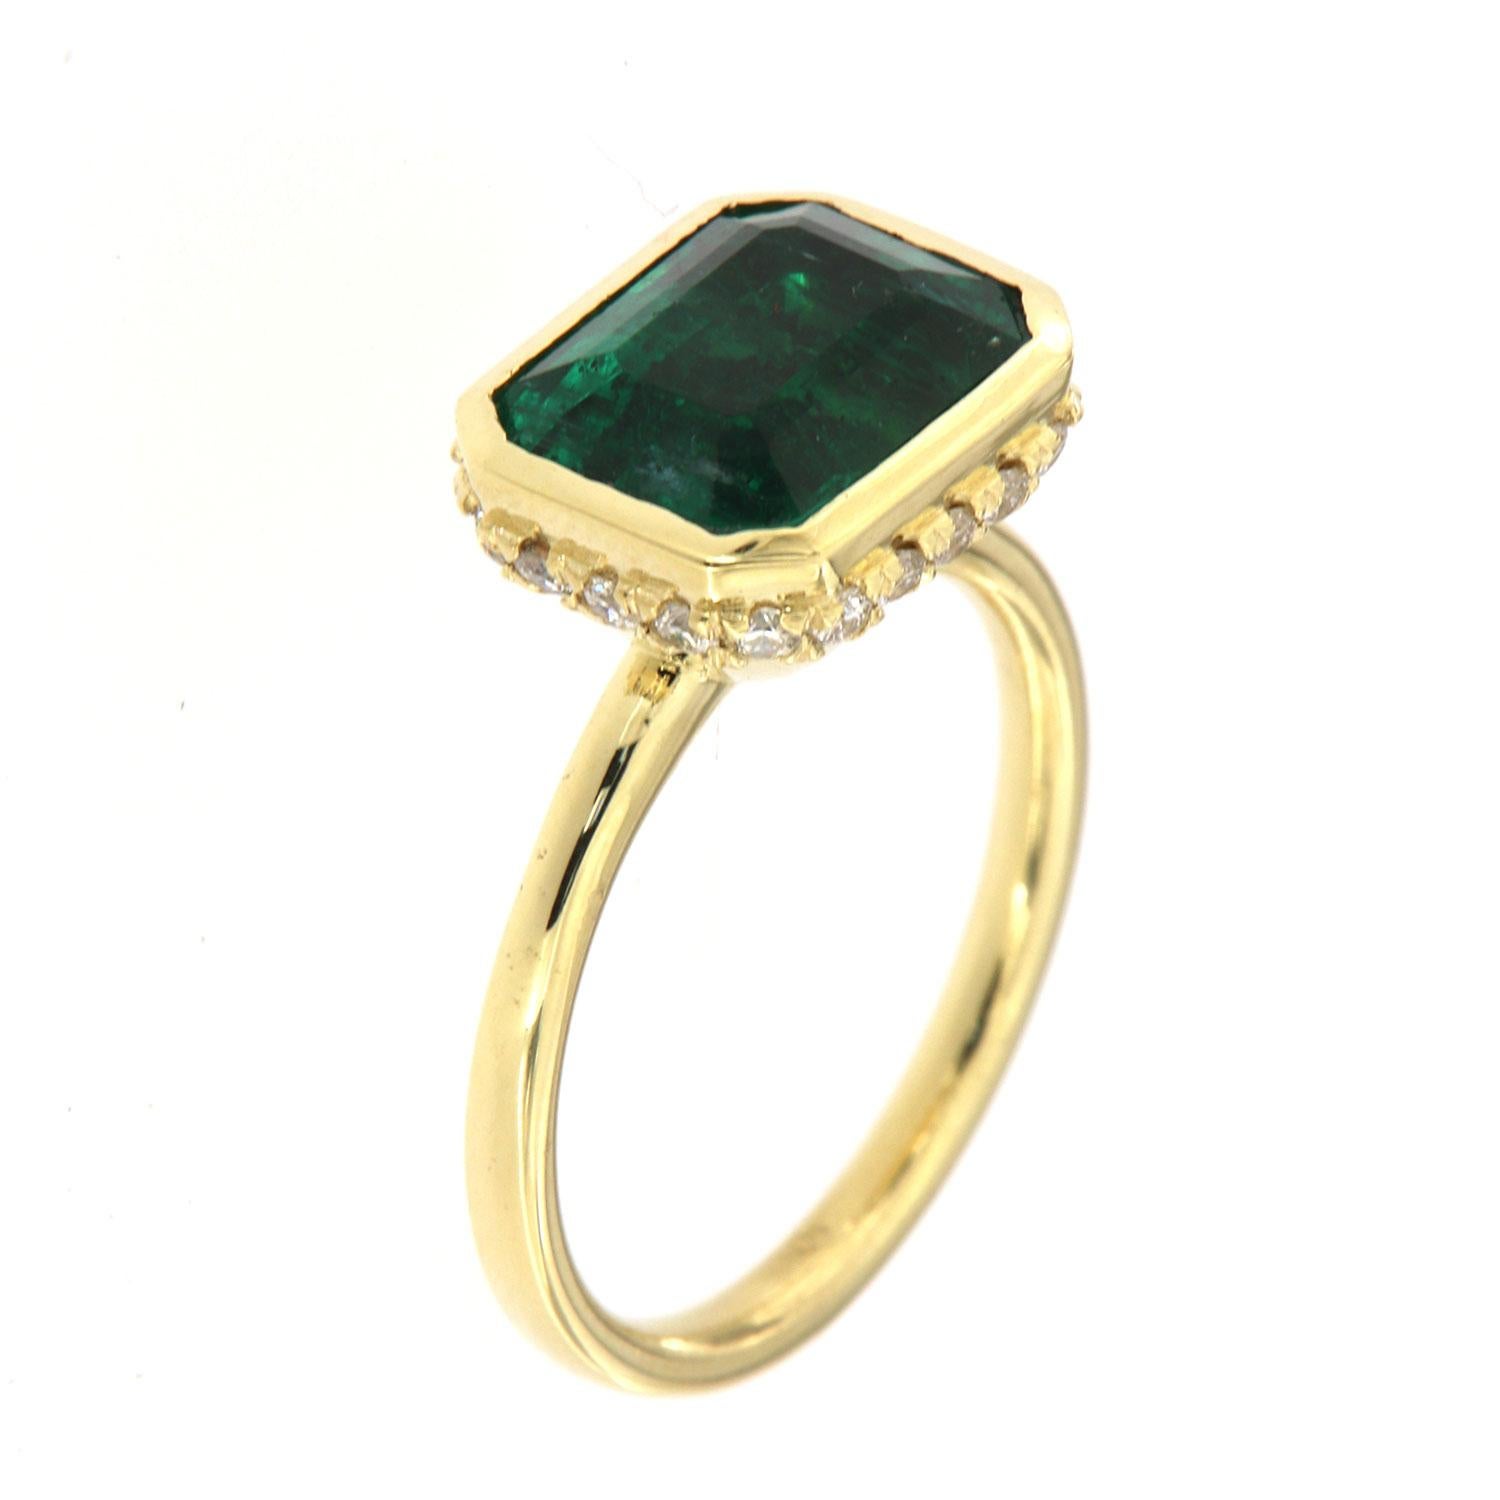 Diese 18k Gelbgold zarten Ring verfügt über eine 3,93 Karat Vibrant grünen sambischen Smaragd geschnitten Lünette gesetzt Ost-West-Stil. Einundzwanzig (21) runde Brillanten sind in einem versteckten Halo auf der Krone in Mikrozacken gefasst und